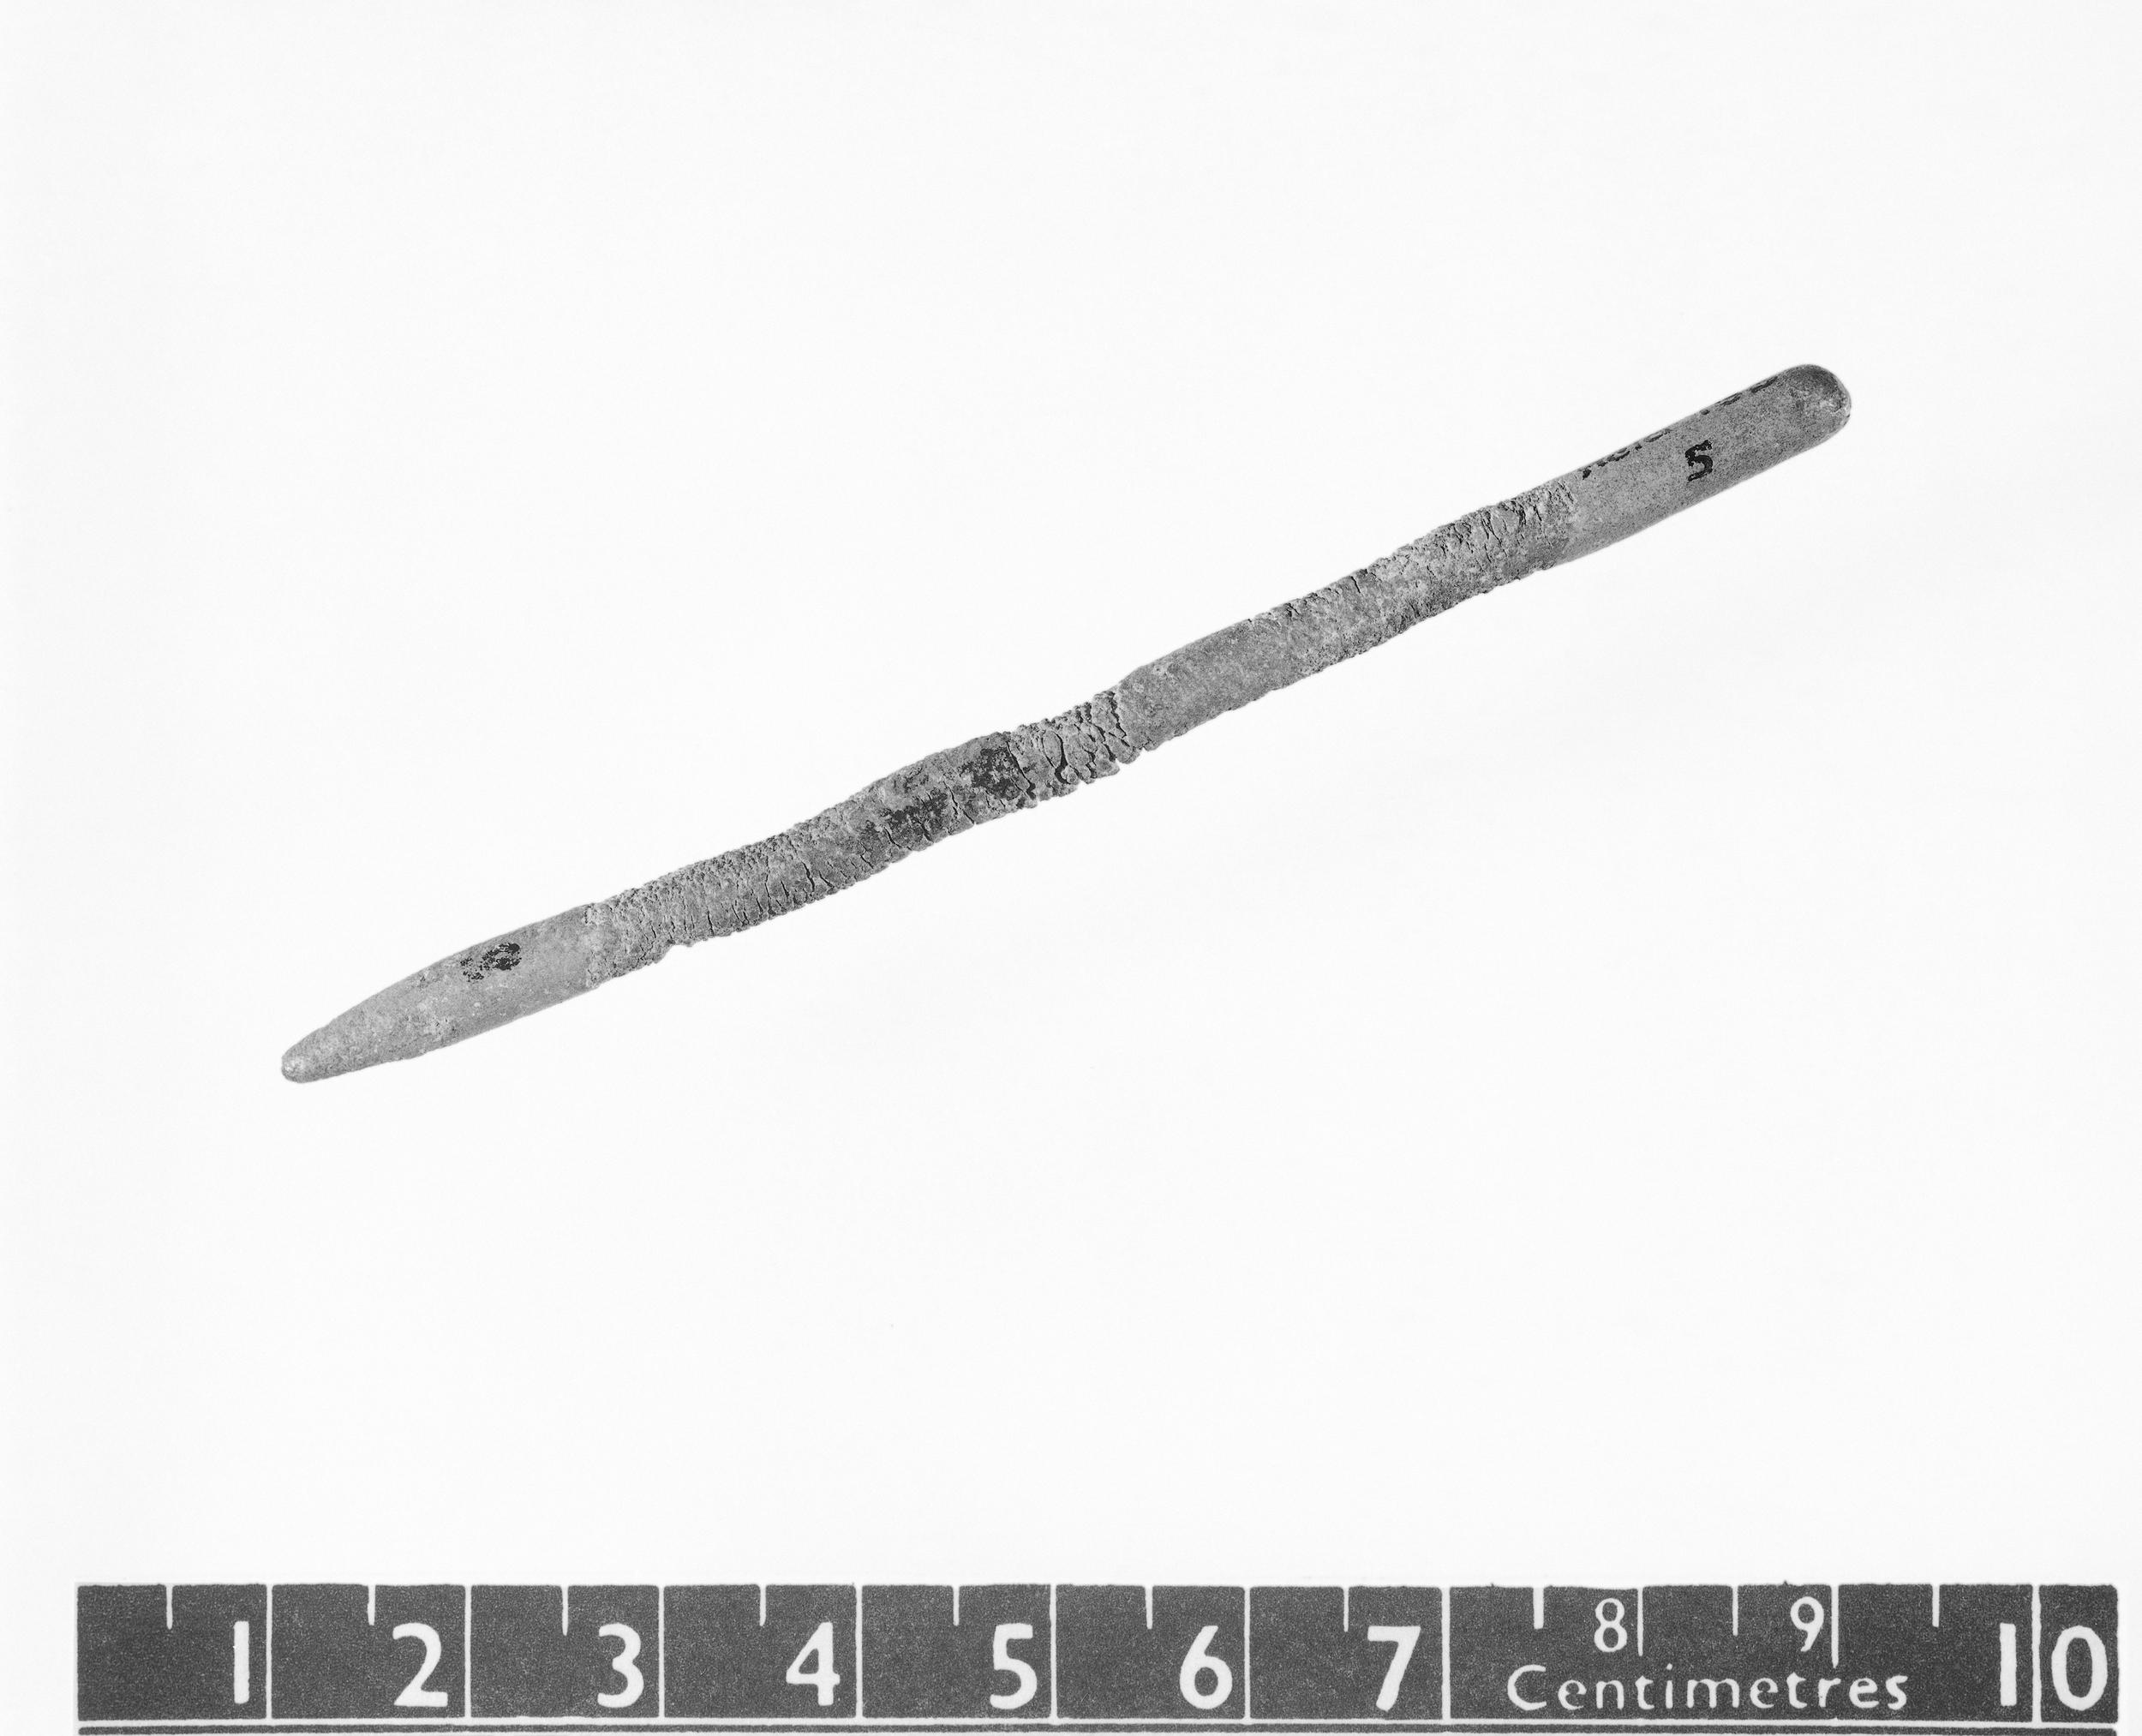 Lead Pencil, circa 1400